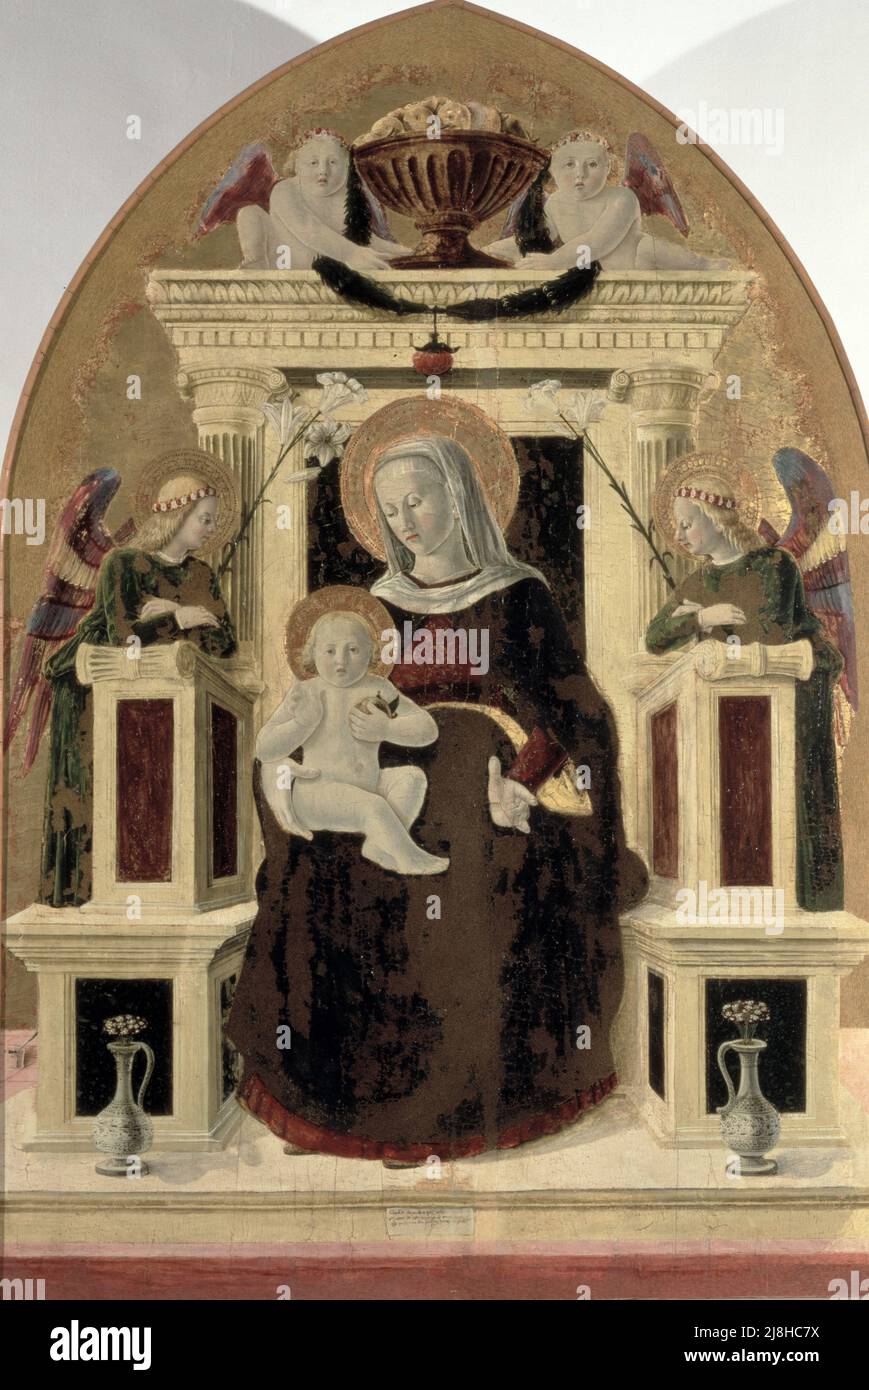 Madonna mit Kind auf dem Thron der Engel (Tempera auf der Tafel) von Giovanni, Girolamo (1449-73); Palazzo Ducale, Urbino, Italien; Italienisch, nicht urheberrechtlich geschützt. Stockfoto